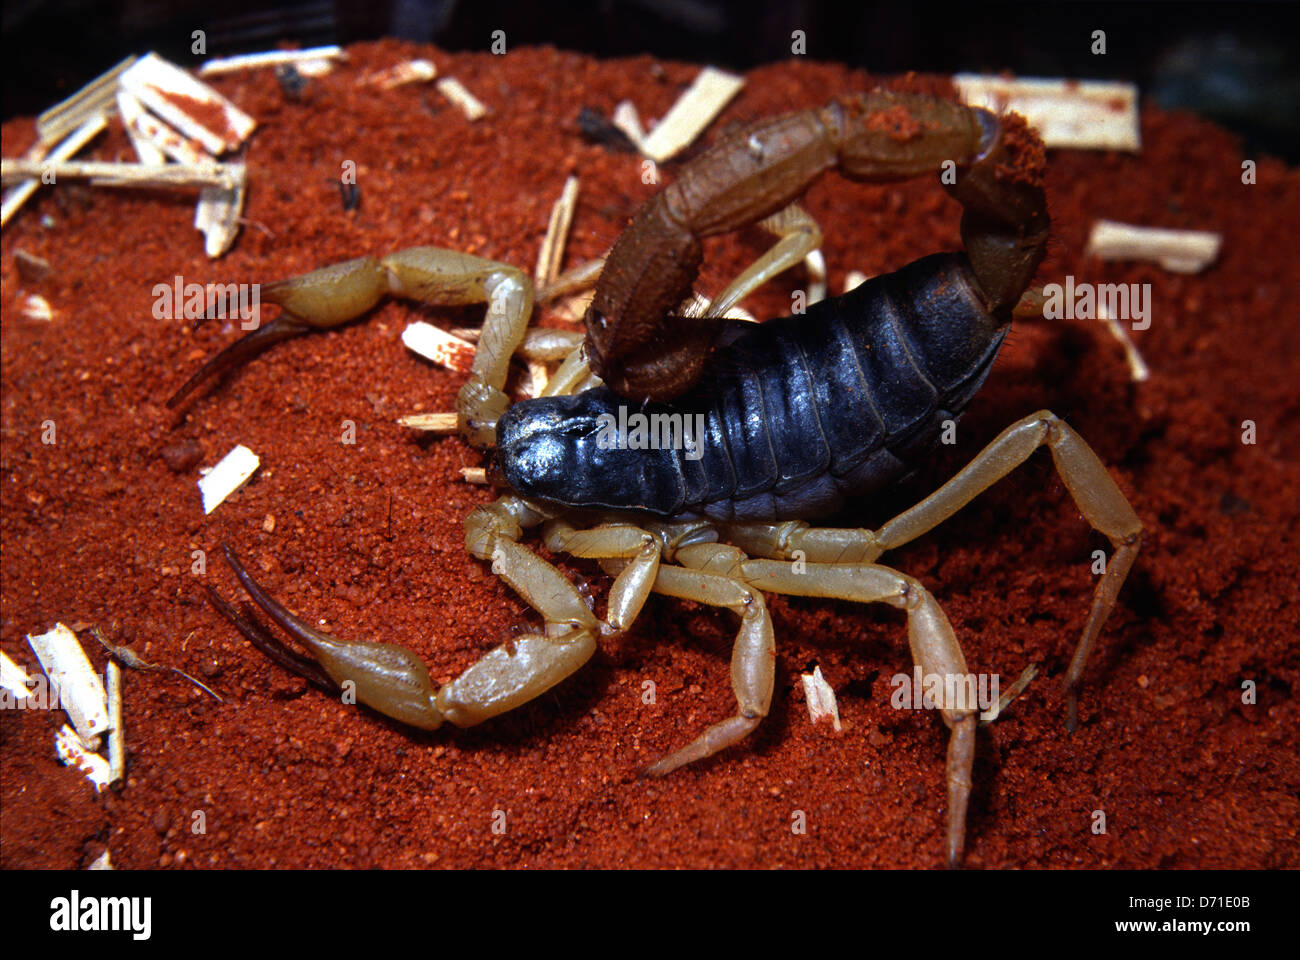 Arizona Desert hairy scorpion, Hadrurus arizonensis, Caraboctonidae, USA Stock Photo